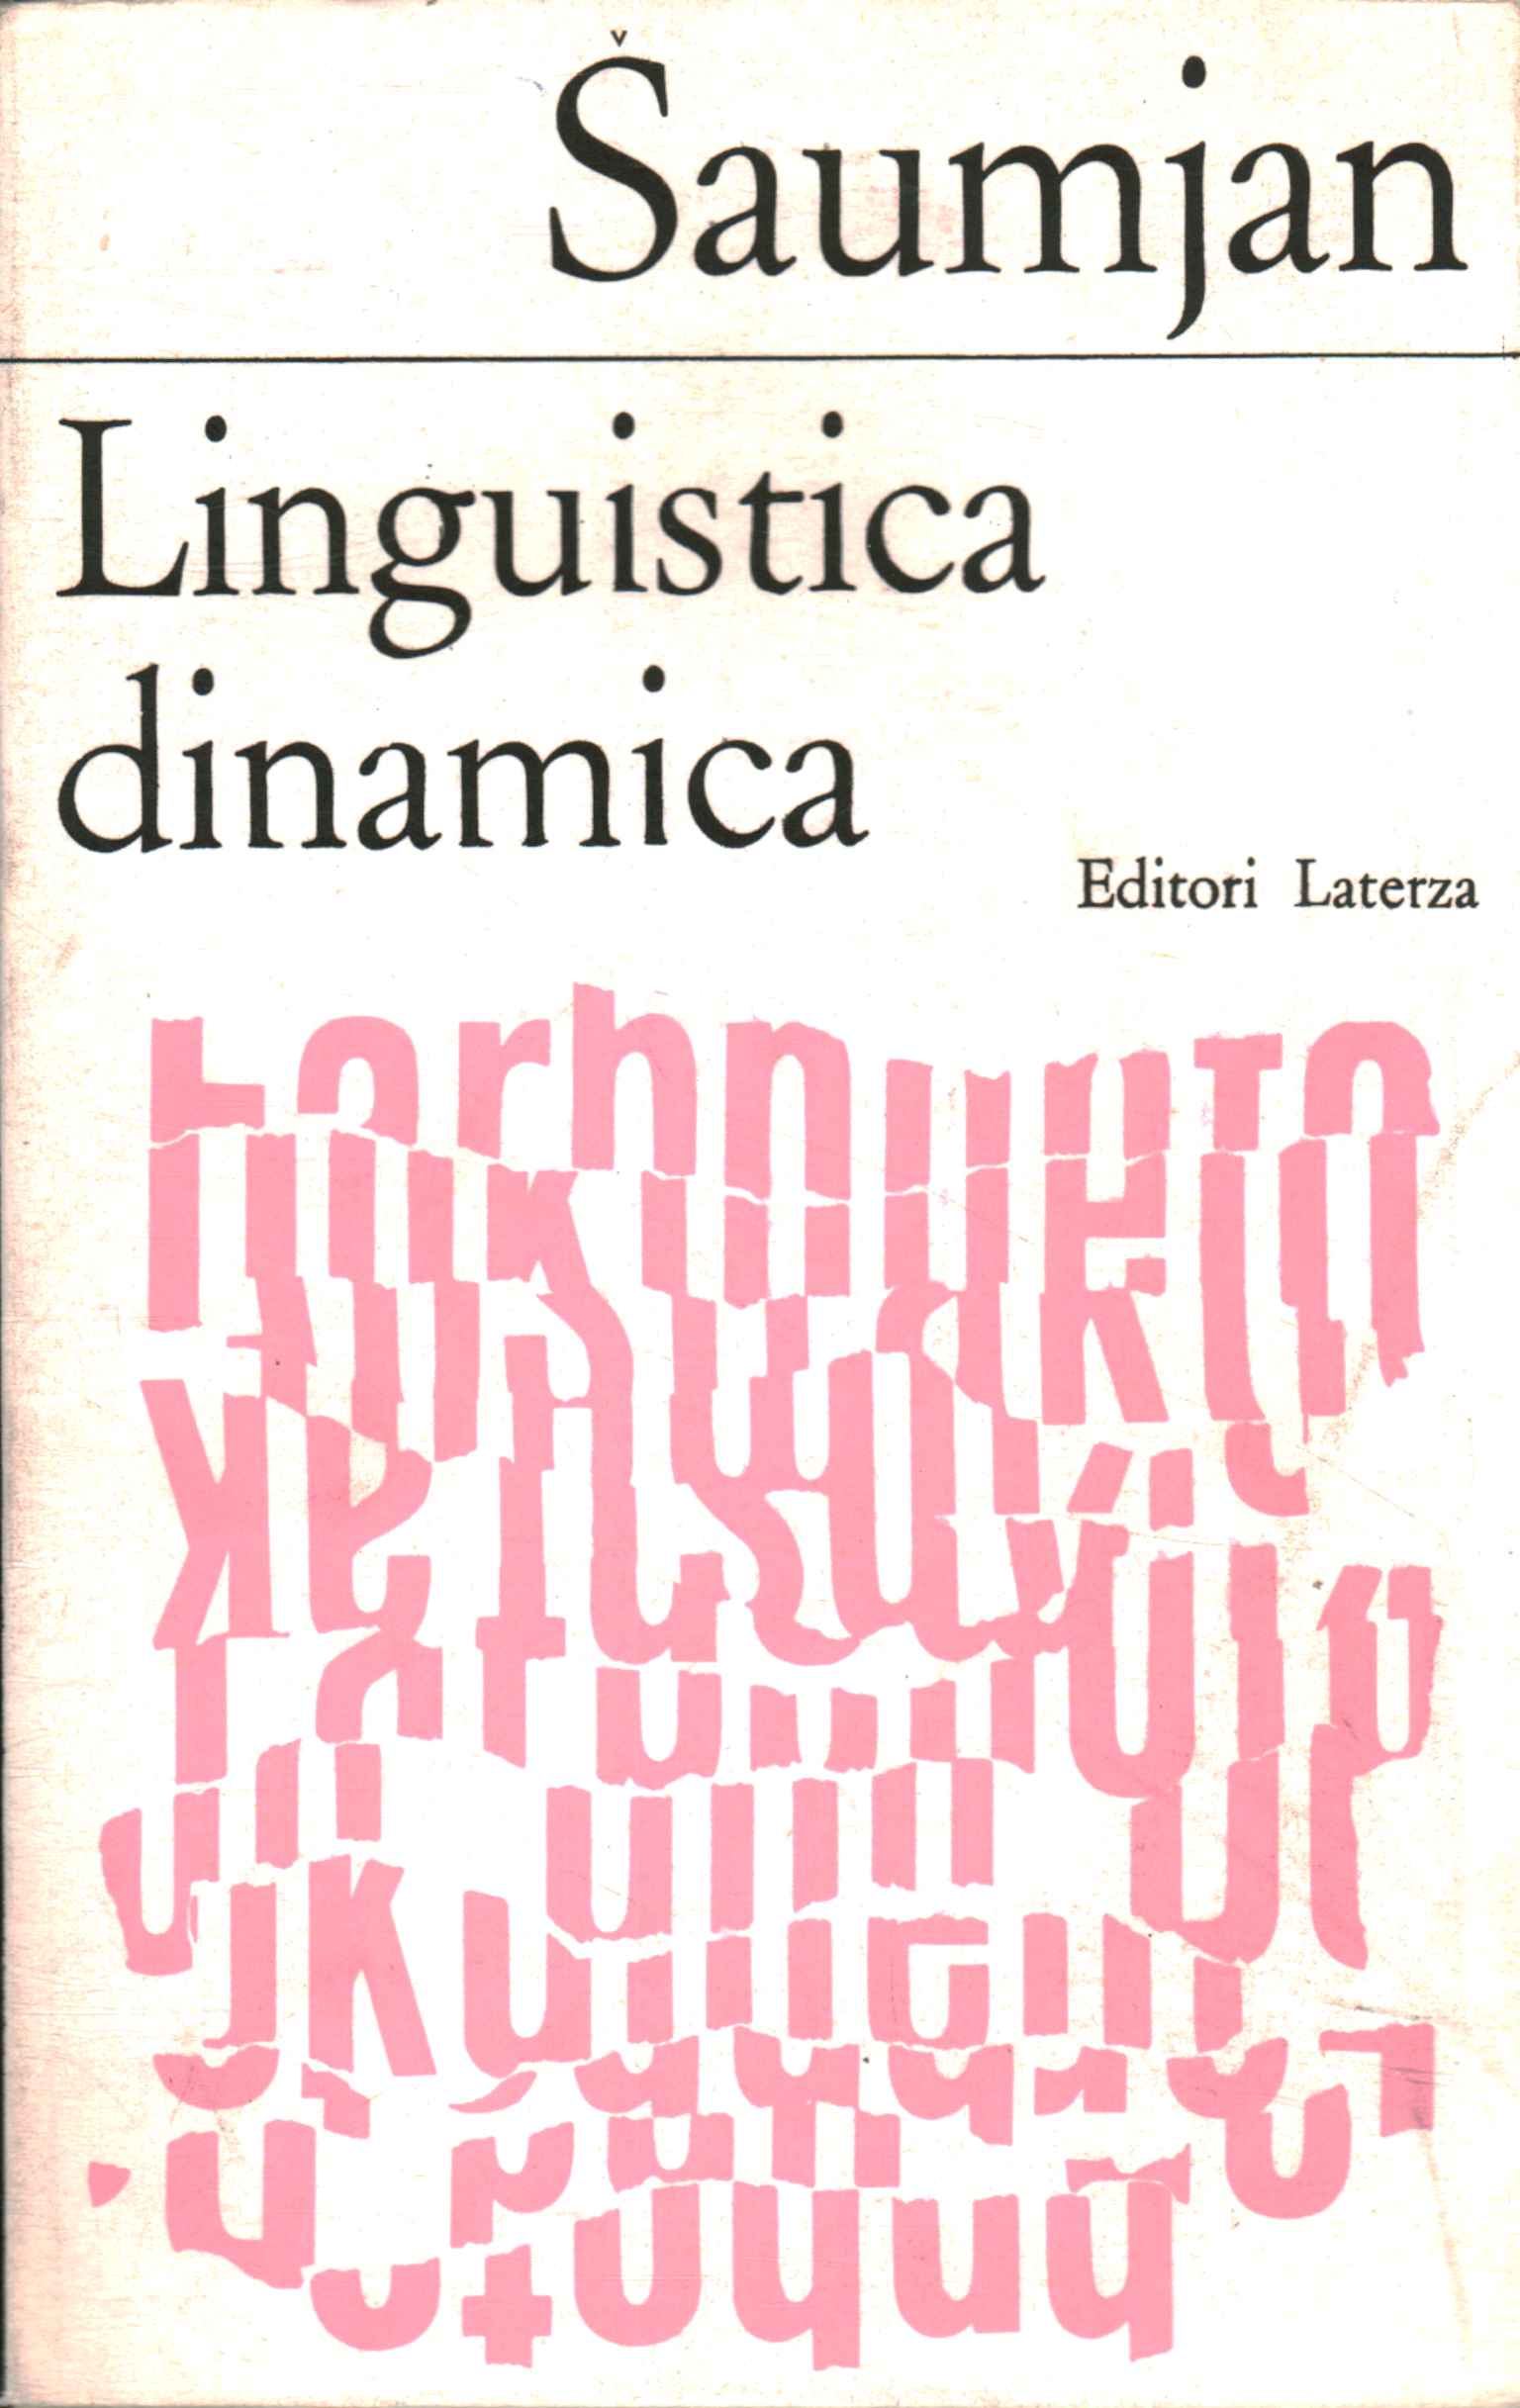 Dynamic linguistics